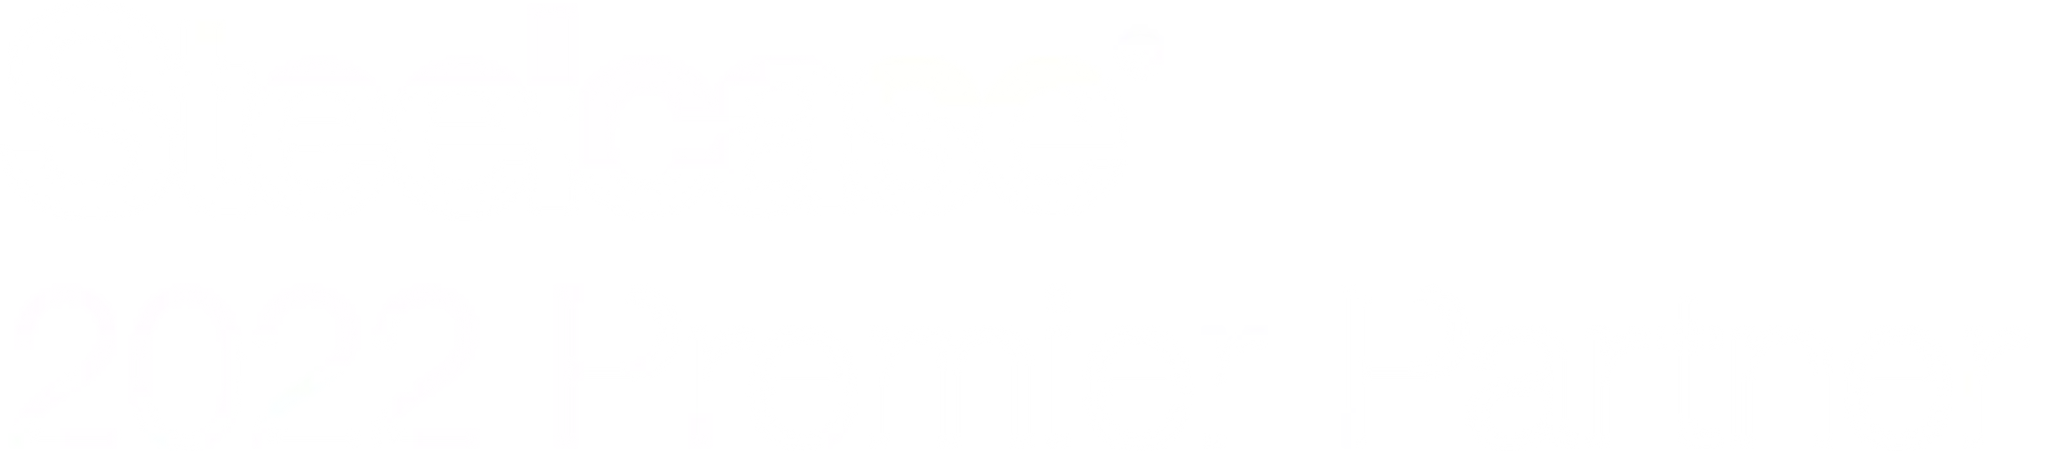 Logo for Steelcase Premier Partner